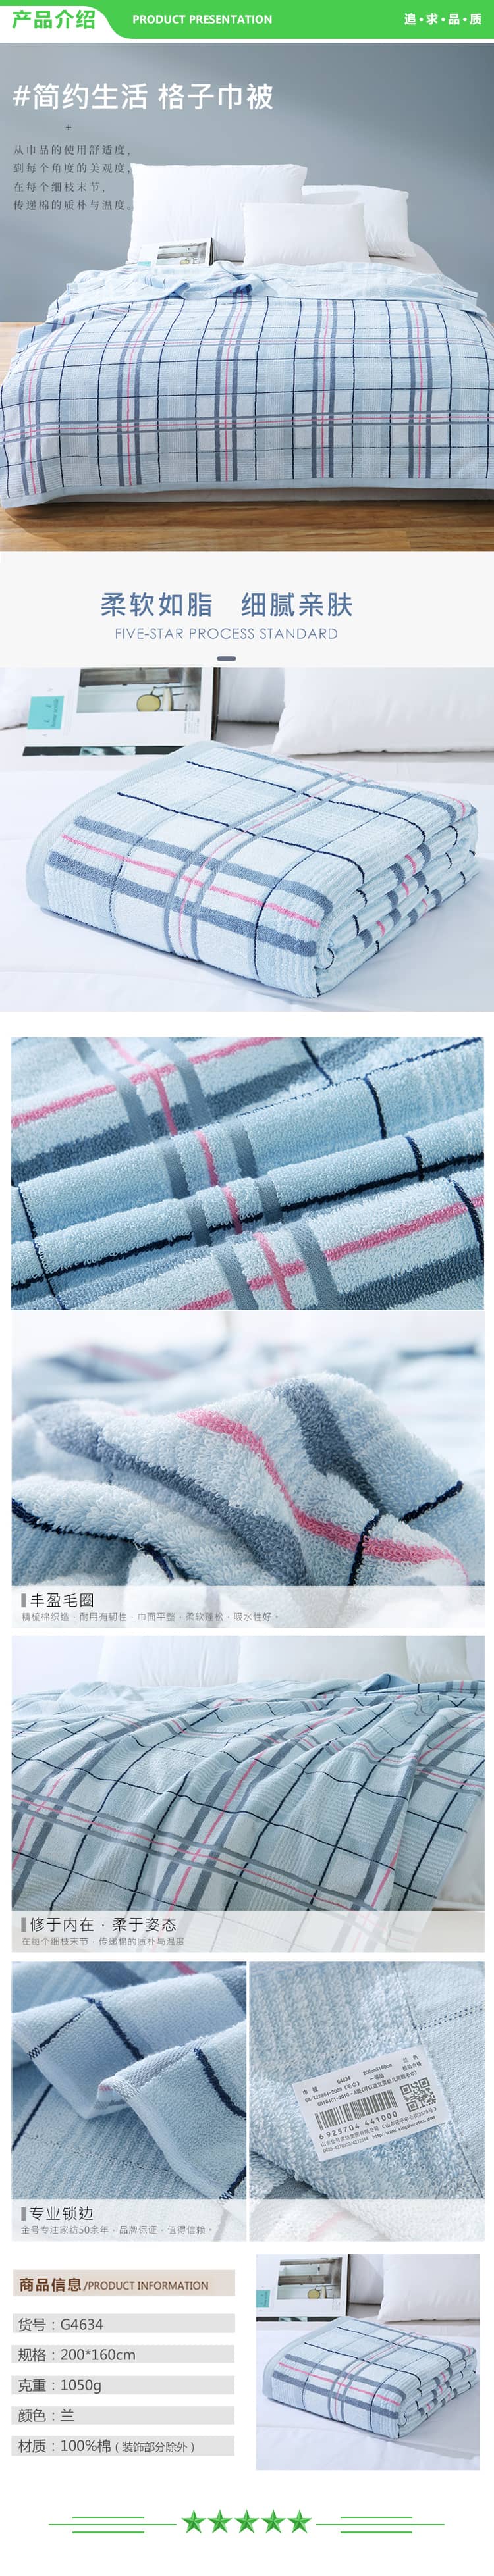 金号 KINGSHORE G4634 毛巾家纺 纯棉经典格子毛巾被盖毯一条装 蓝色 1050g 200X160cm 2.jpg